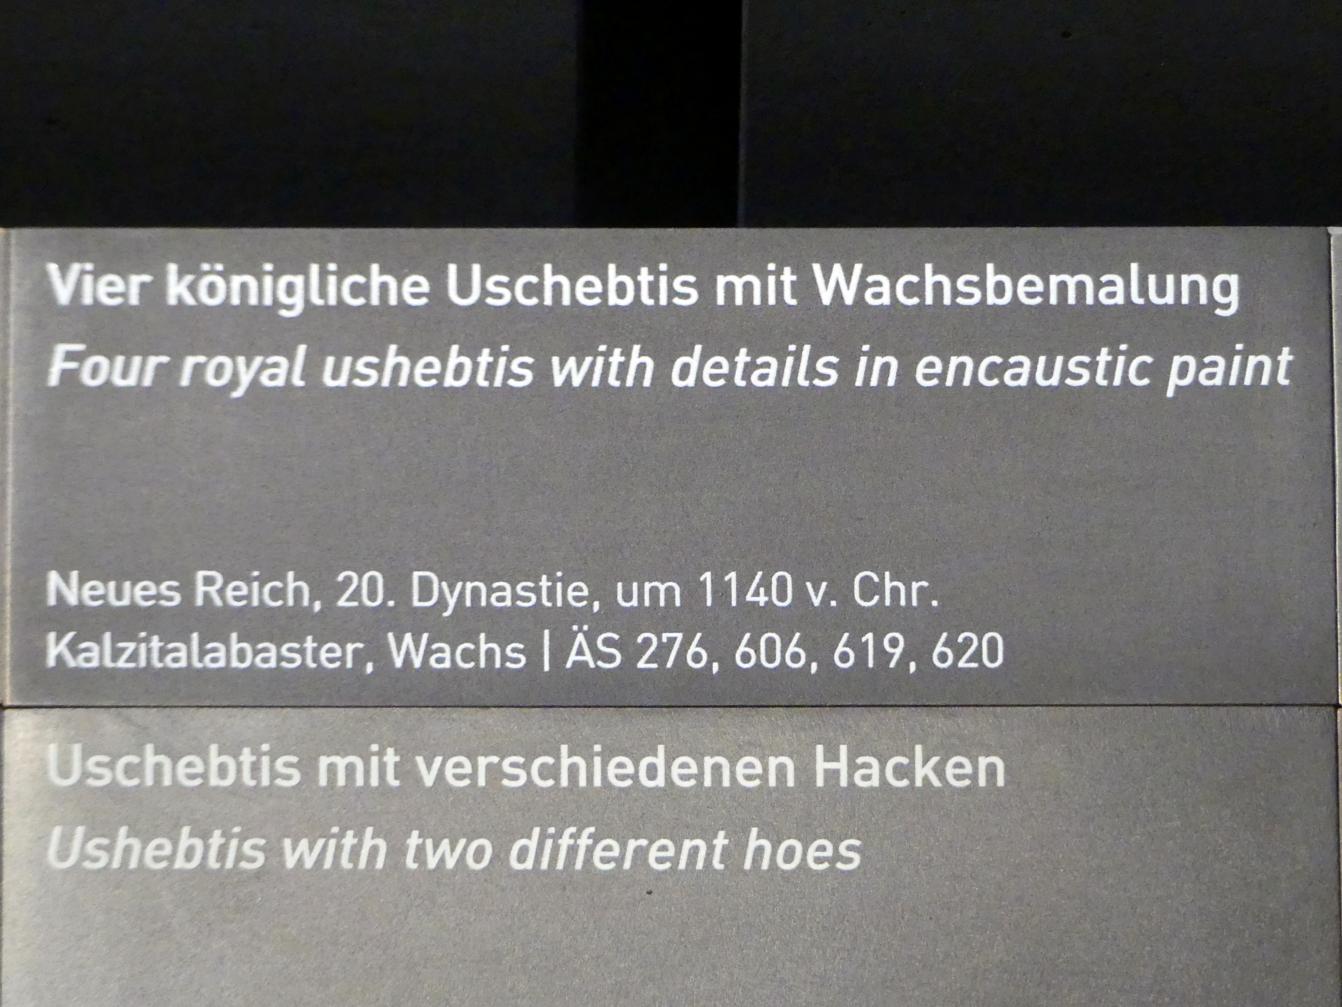 Vier königliche Uschebtis mit Wachsbemalung, 20. Dynastie, Undatiert, 1140 v. Chr., Bild 2/2